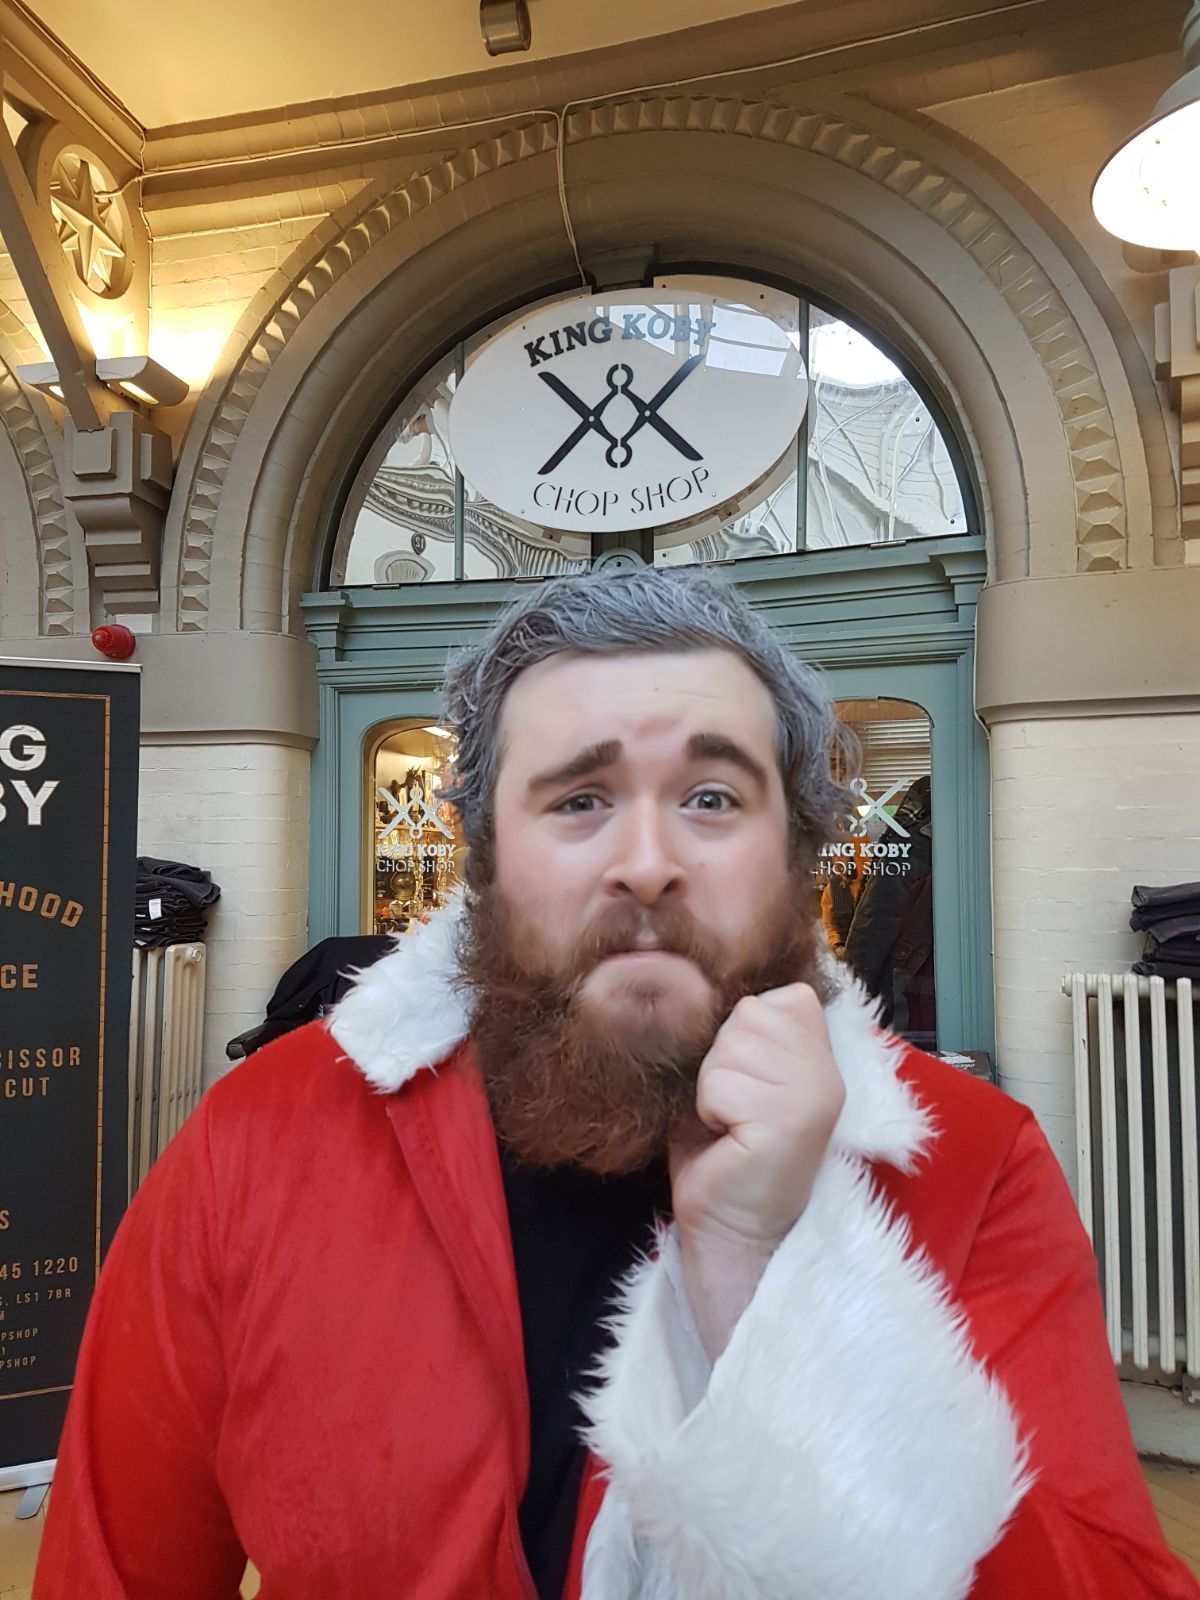 Shaving Santa fundraising